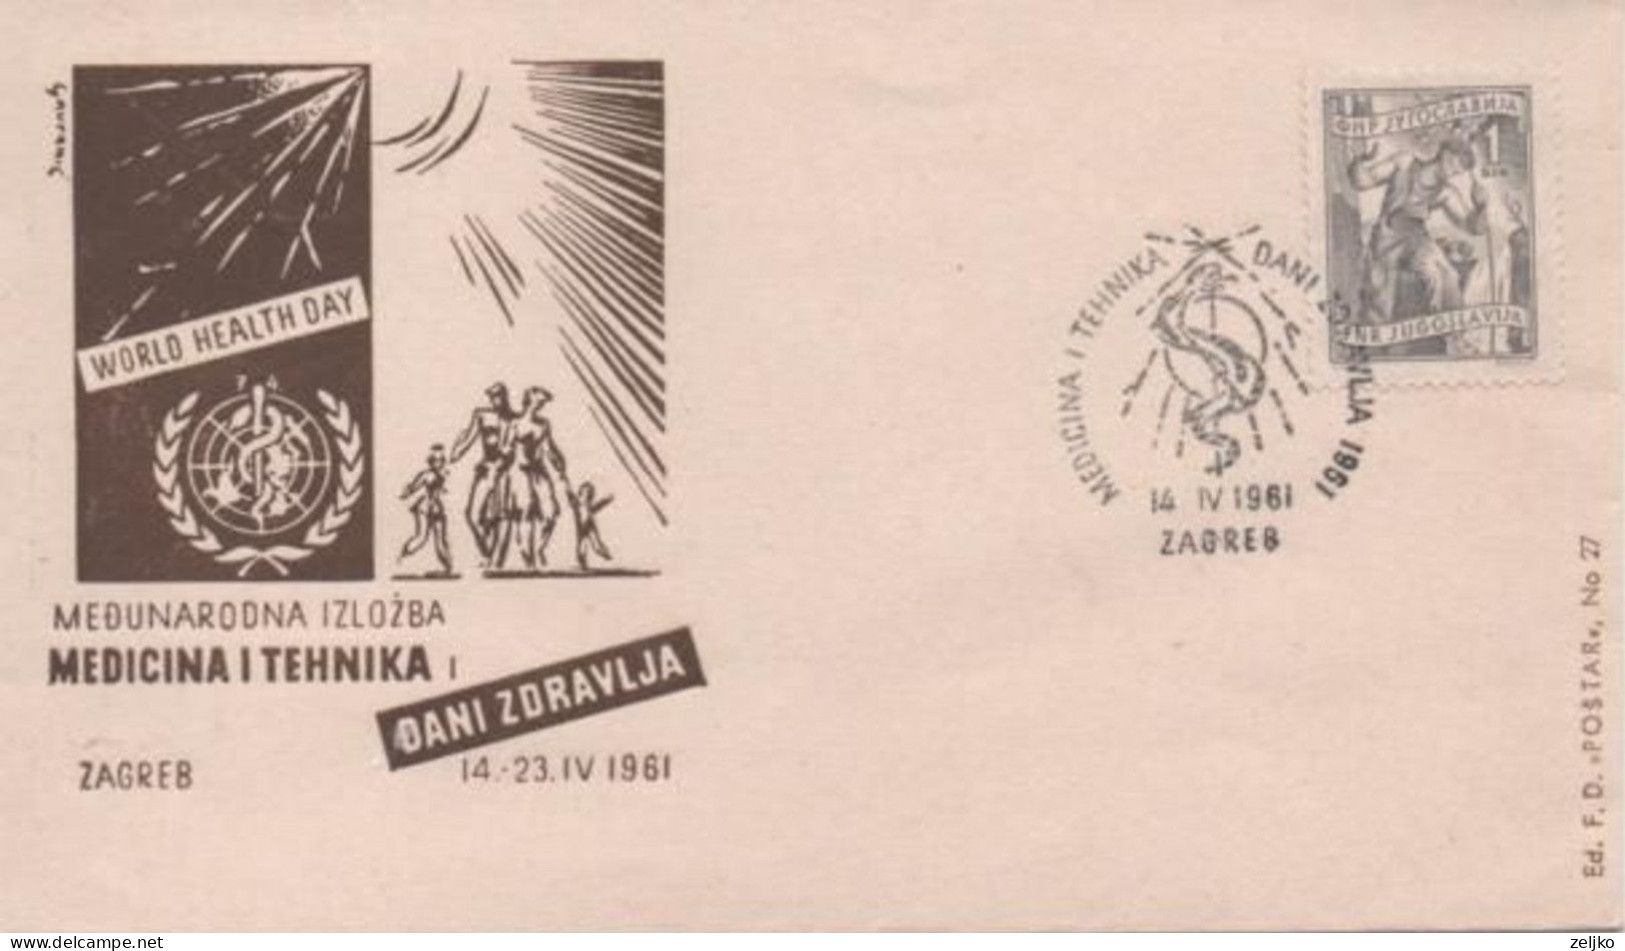 Yugoslavia, International Exhibition Medicine And Technique, Zagreb 1961, World Health Day - Medicine